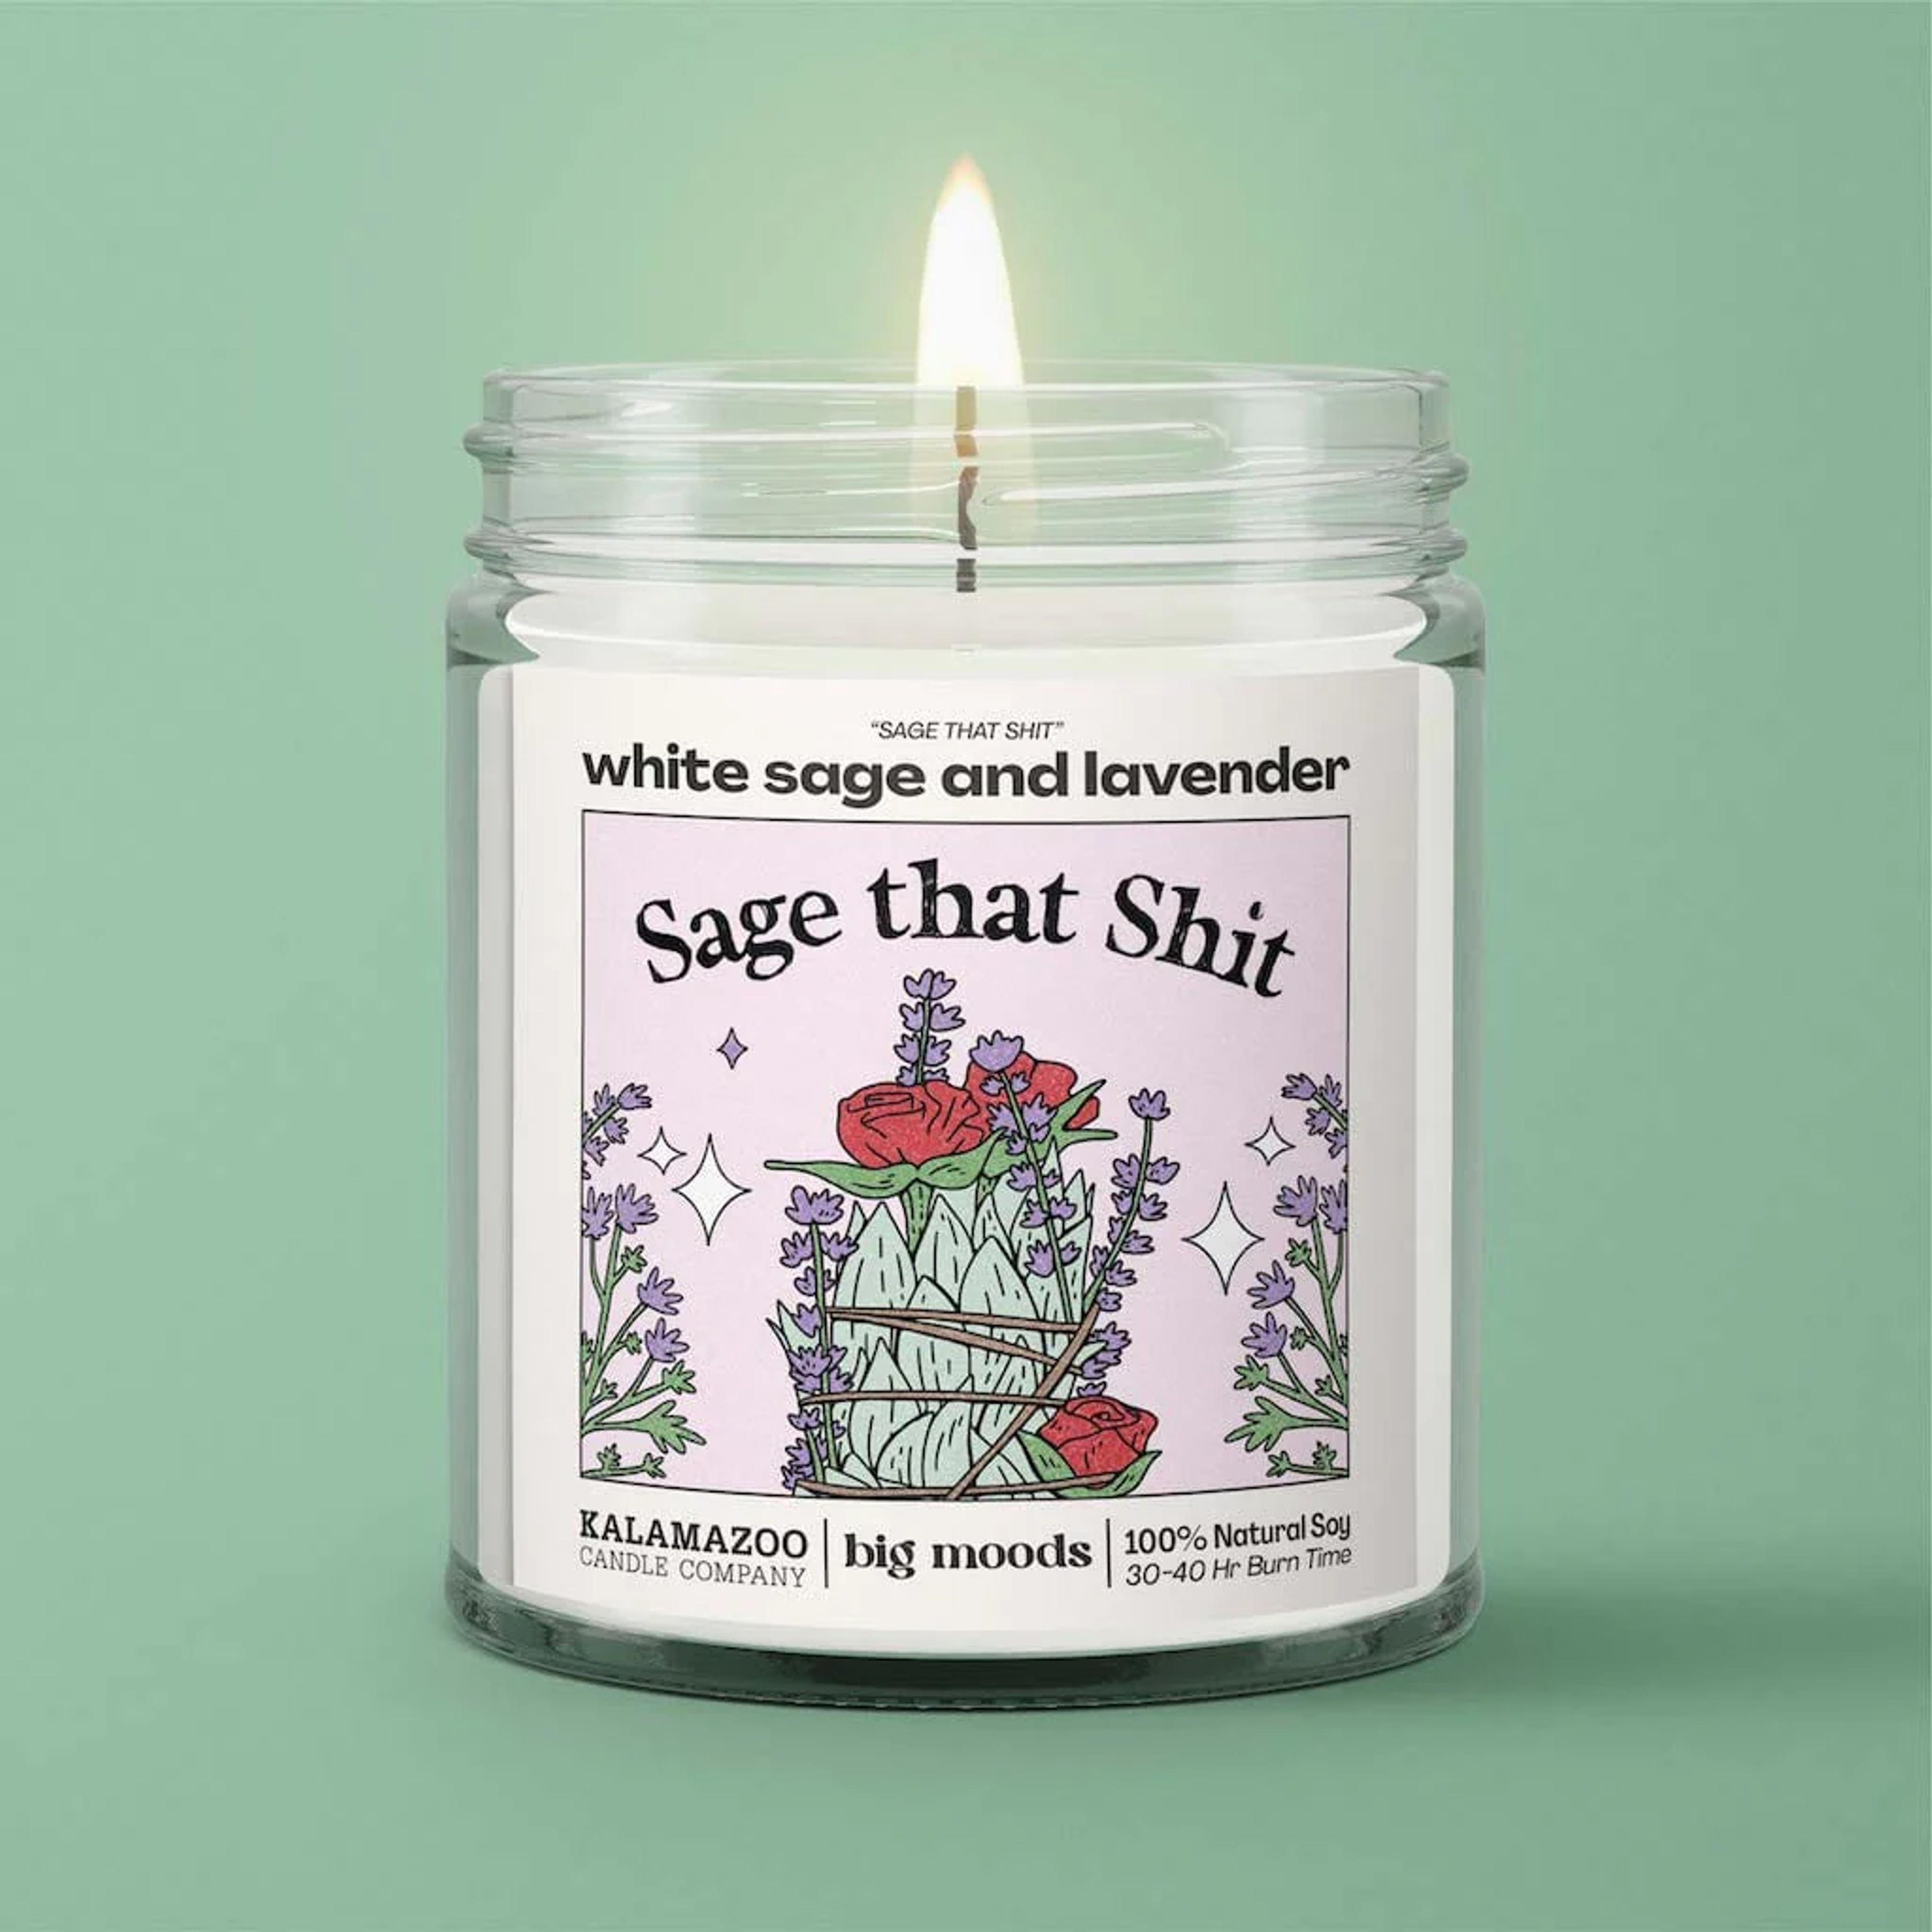 "Sage That Shit" White Sage & Lavender - 5oz Soy Candle